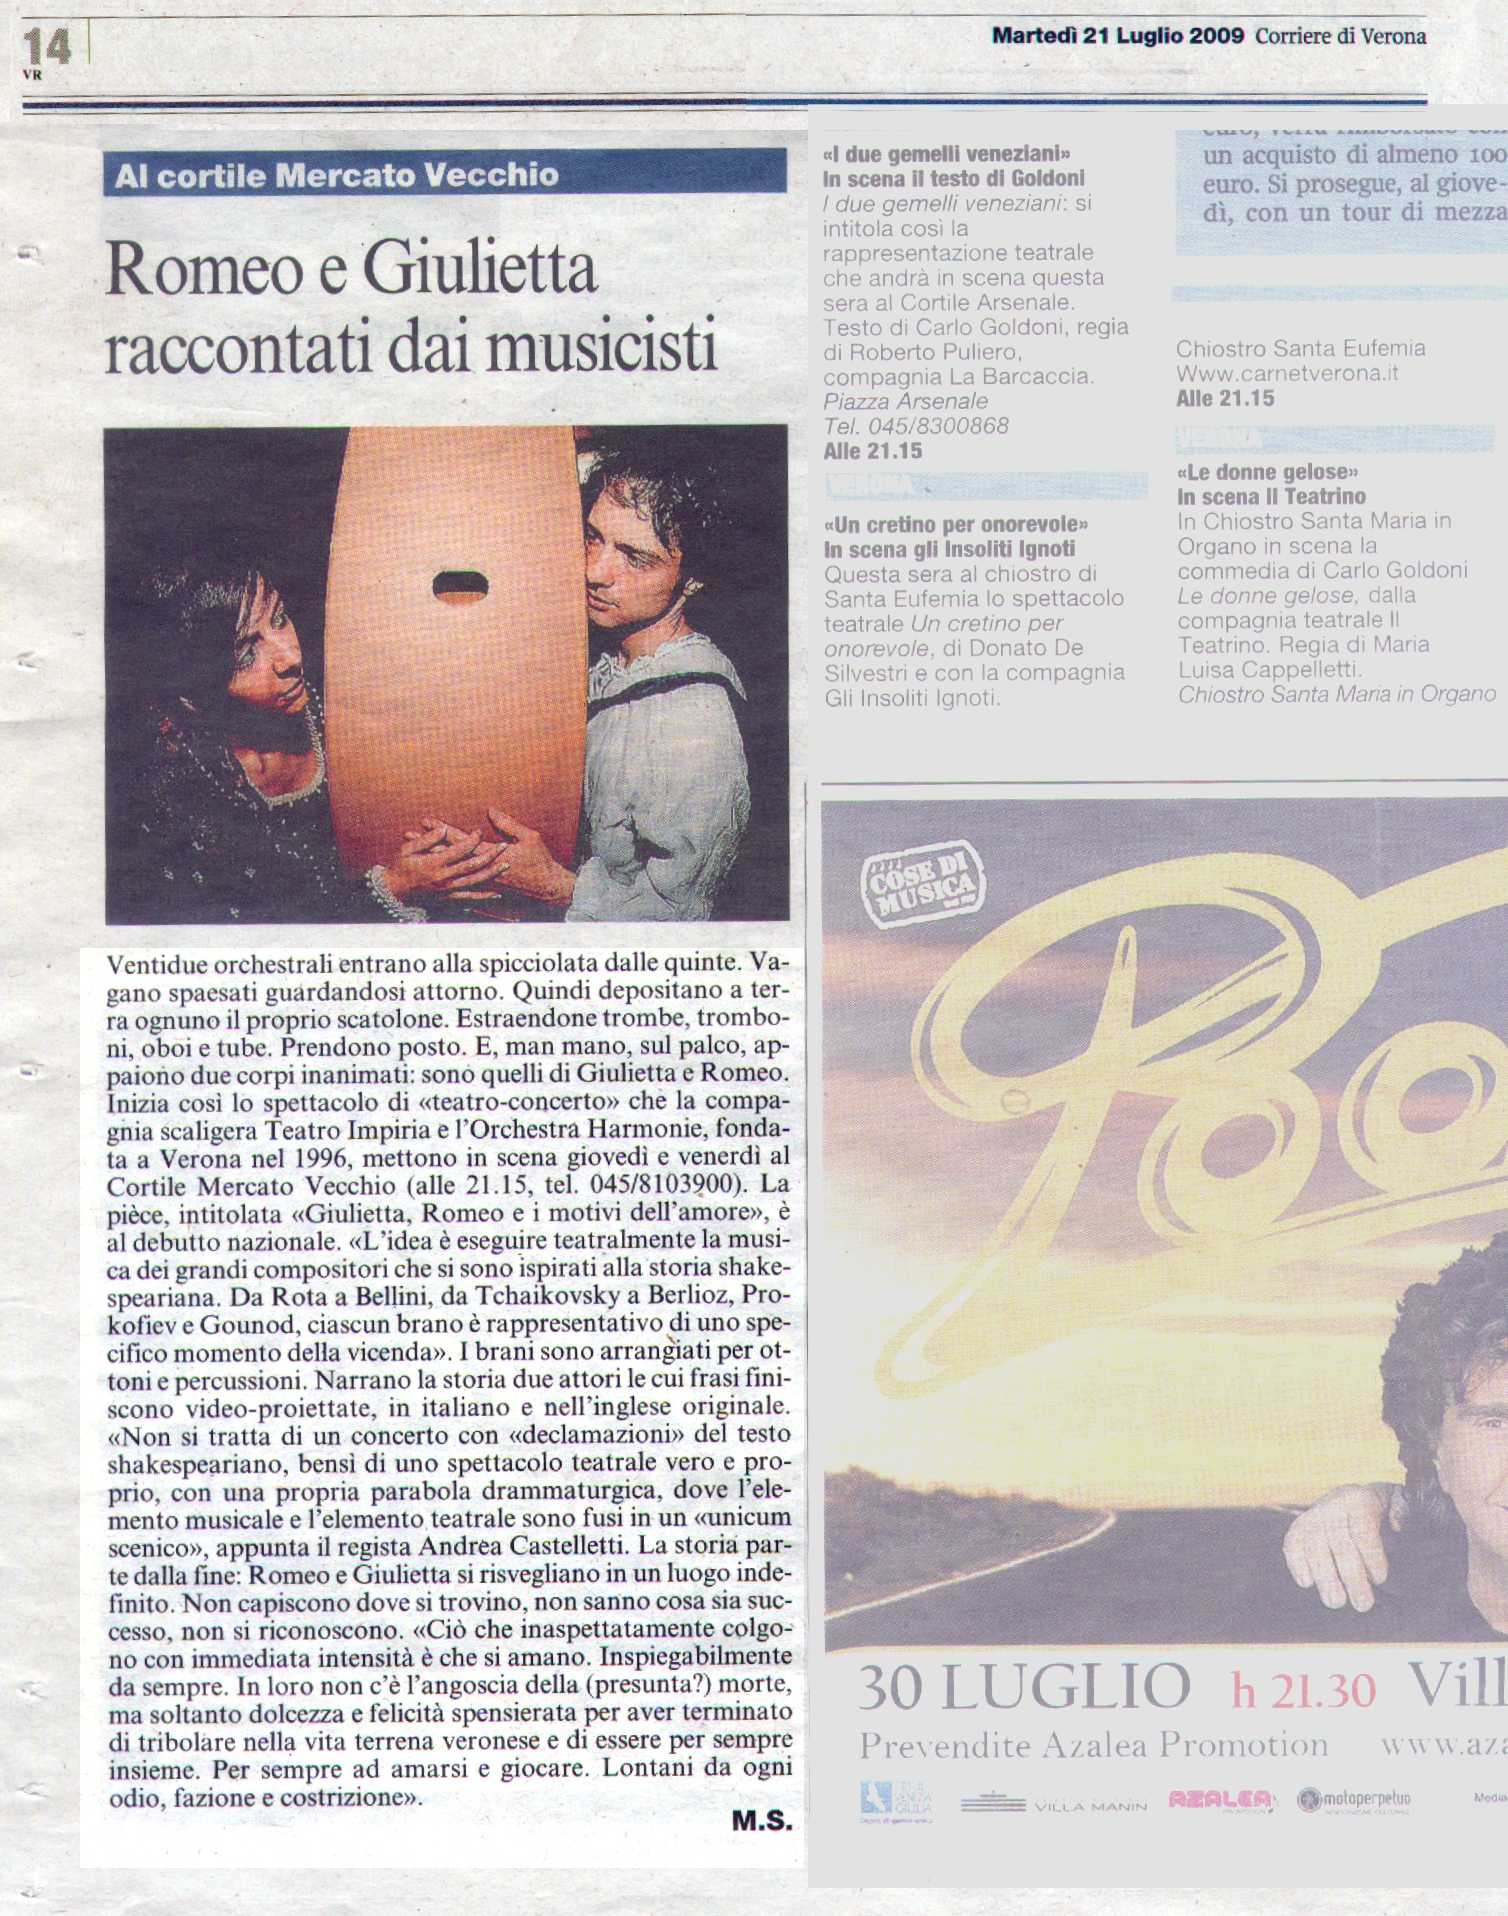 Rassegna stampa: Romeo e Giulietta raccontati dai musicisti